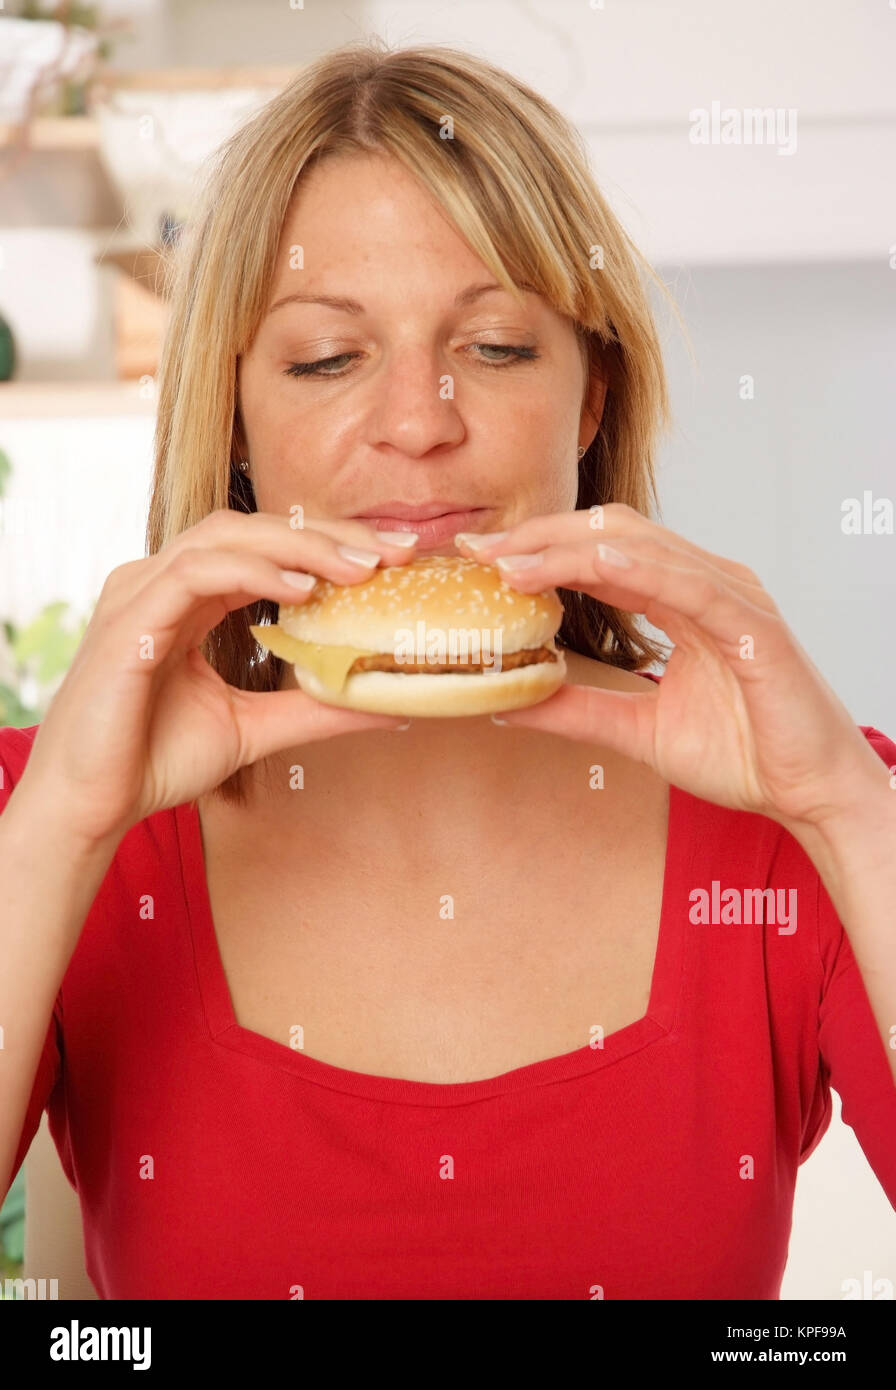 Junge Frau beisst in einen Burger - donna mangia Burger Foto Stock